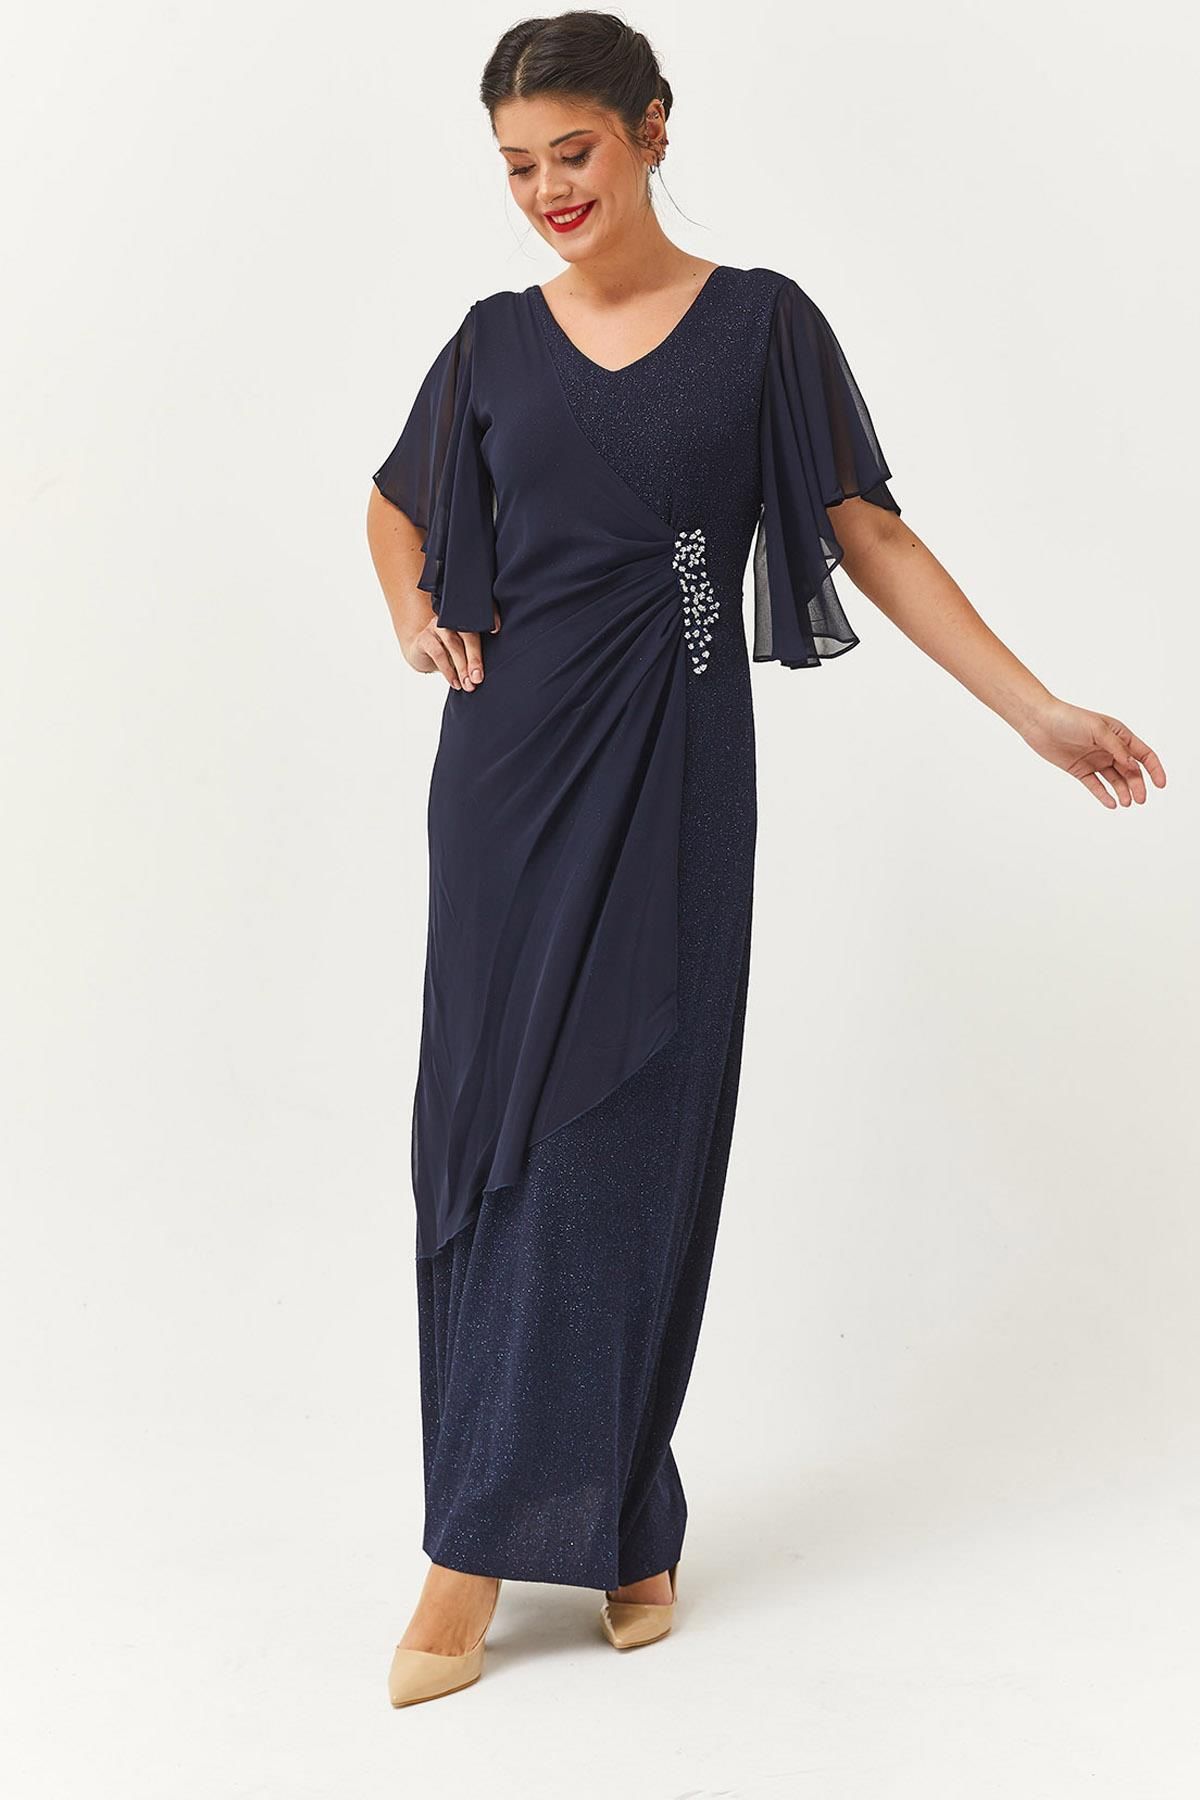 Ebsumu Kadın Şifon Kol Taşlı Asimetrik Detaylı Uzun Lacivert Abiye & Gece Elbisesi